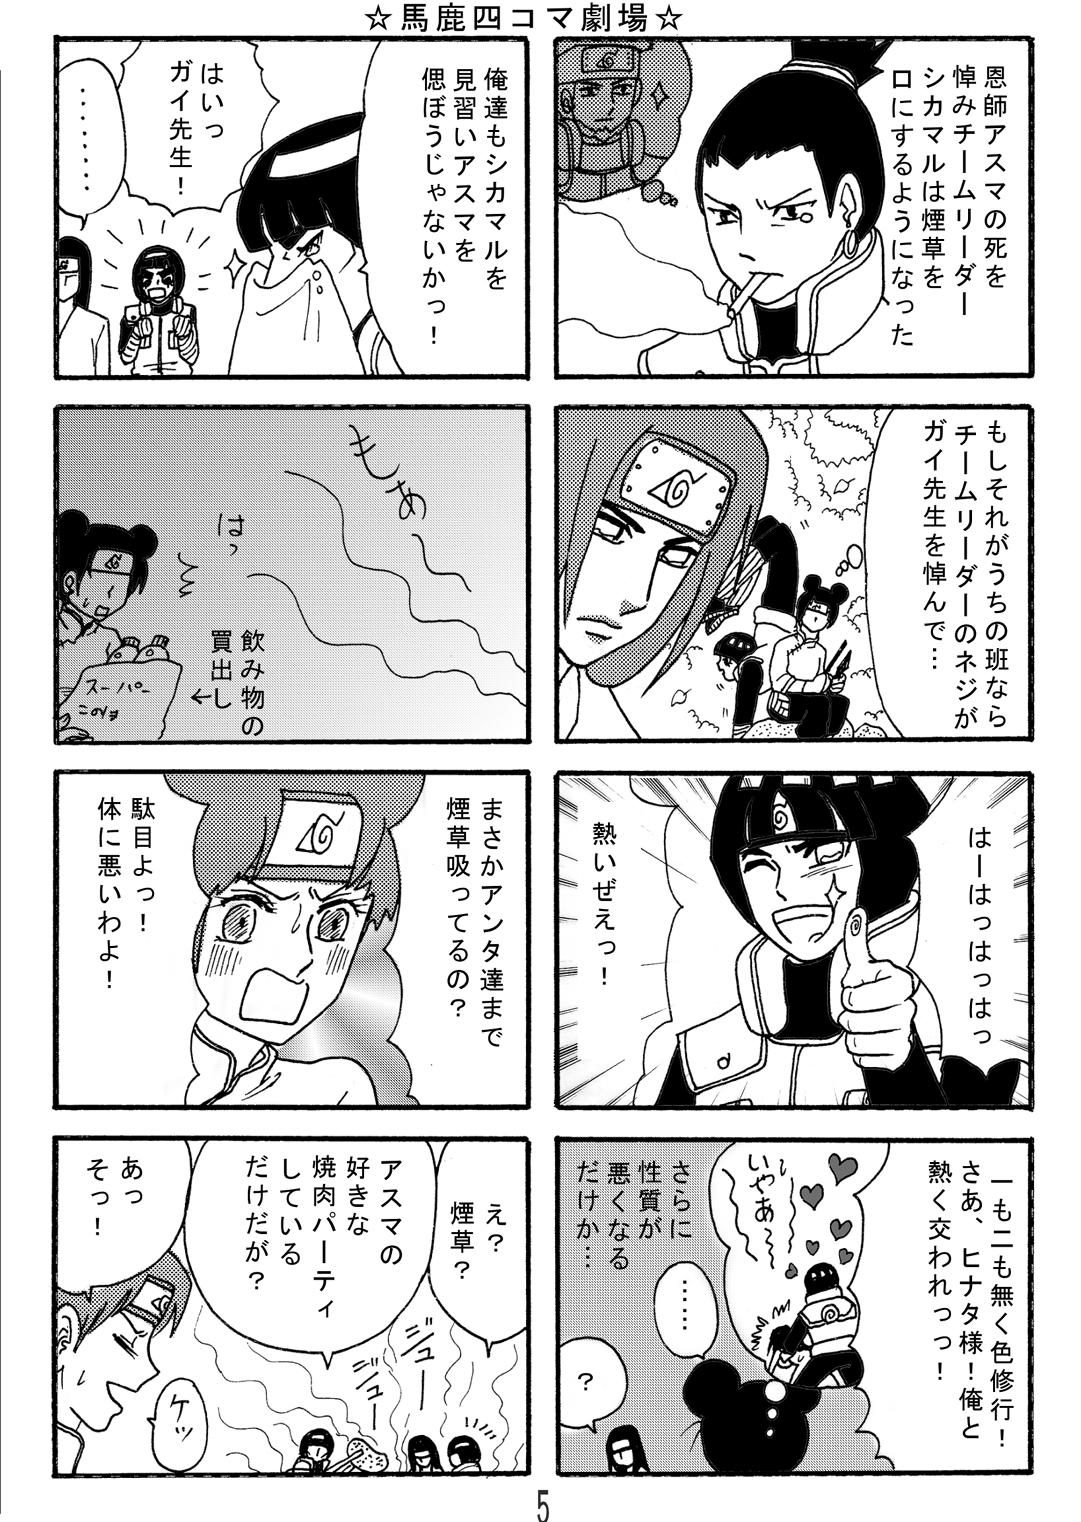 Cartoon Naruto Airen - Naruto Boys - Page 4